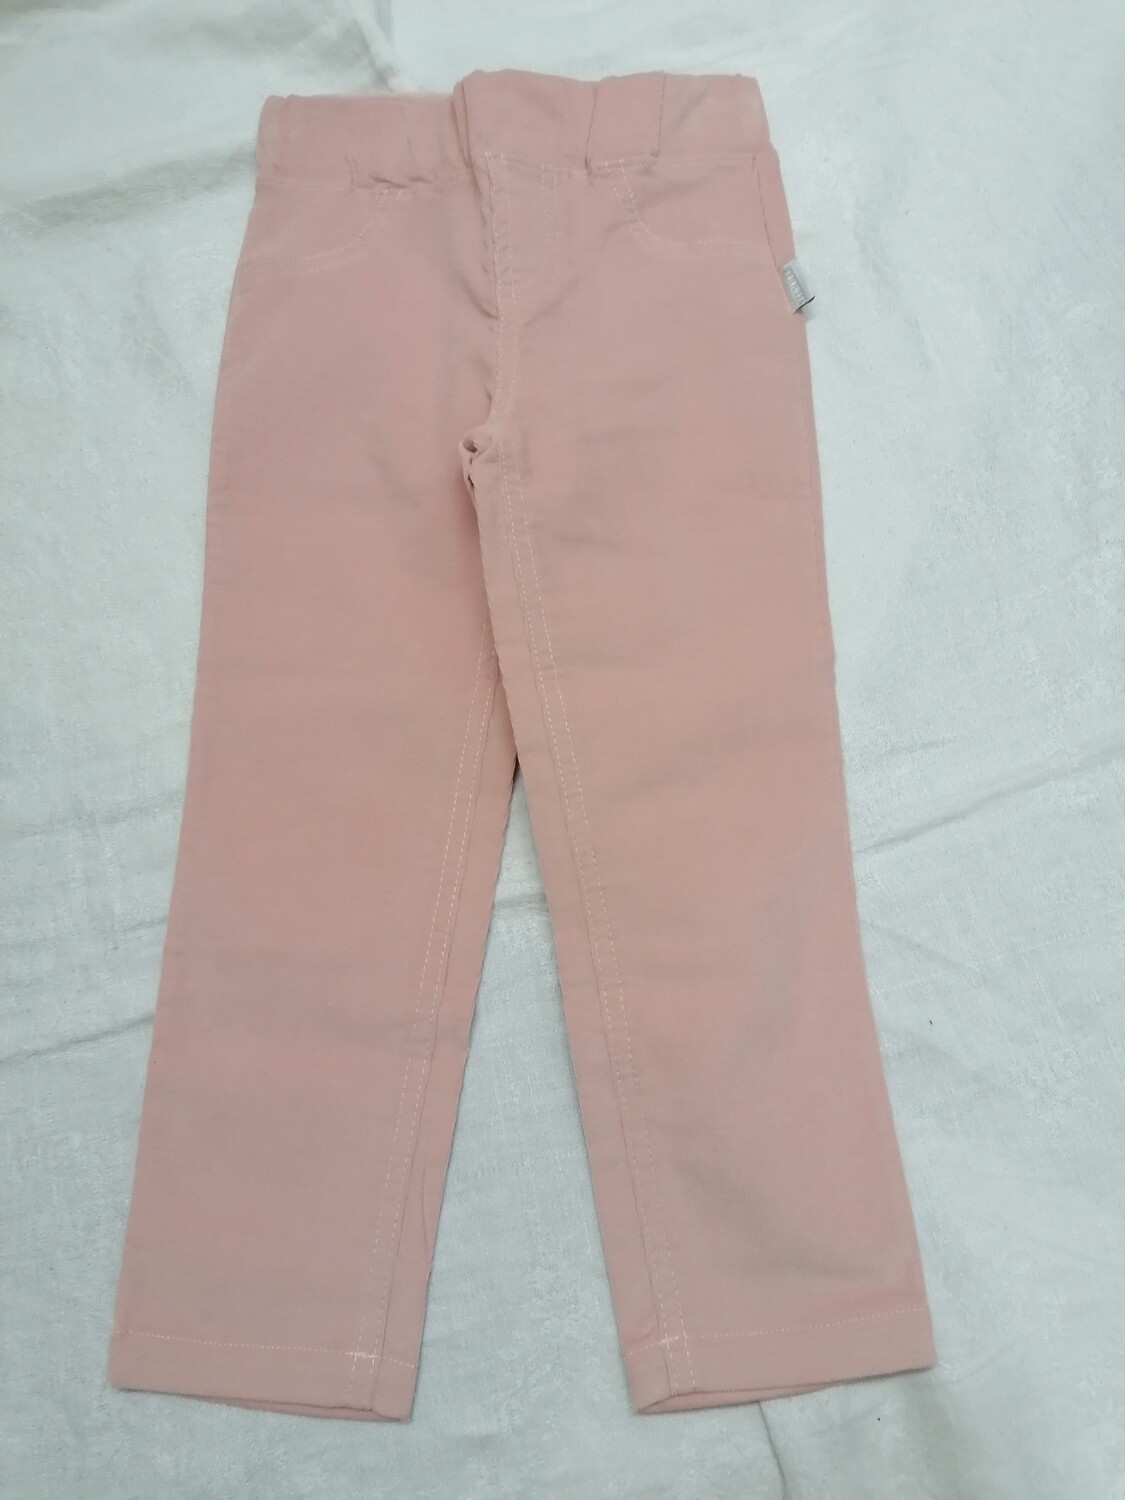 Pantalon rose poudré en velours côtelé fin